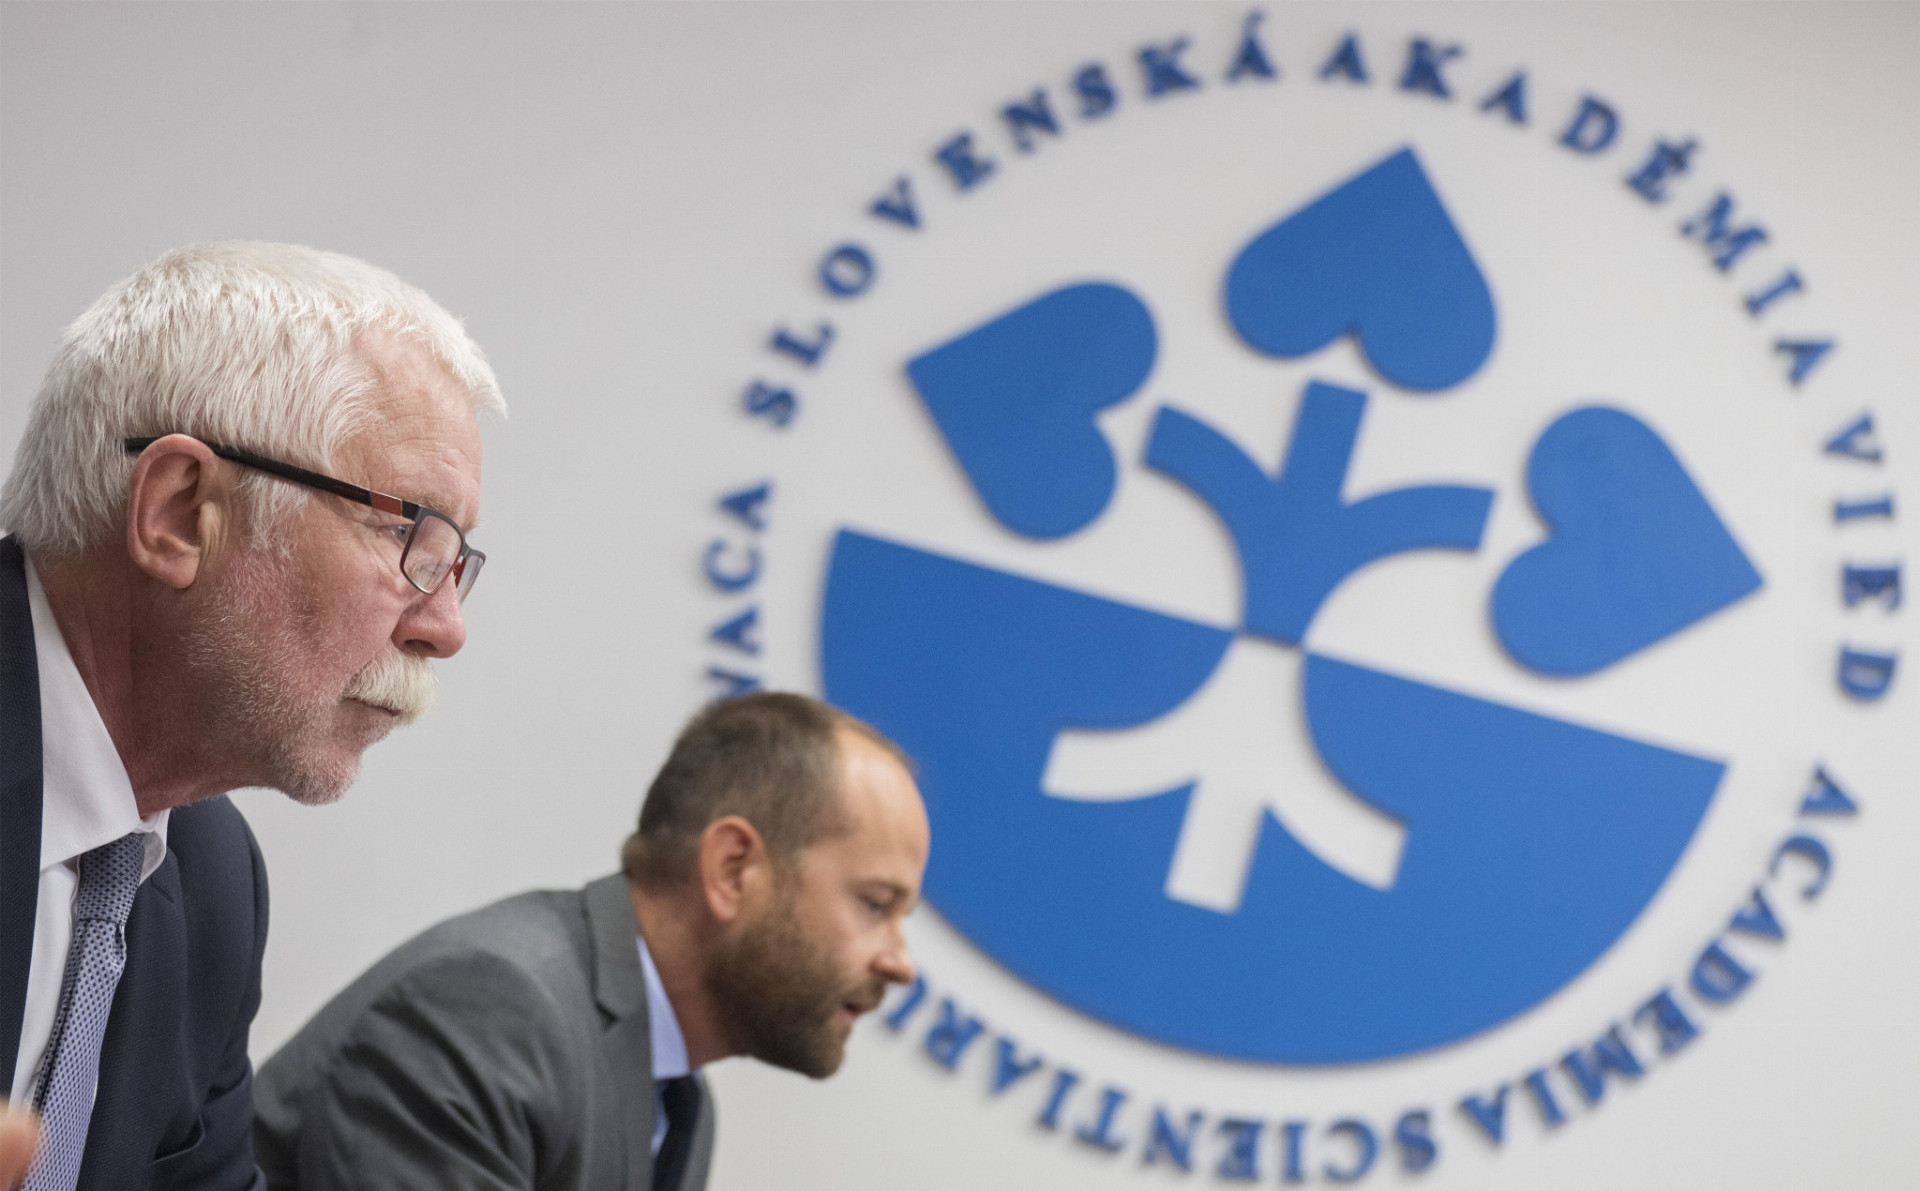 Predseda Slovenskej akadémie vied Pavol Šajgalík (vľavo) zvažuje právne kroky voči ministerstvu.